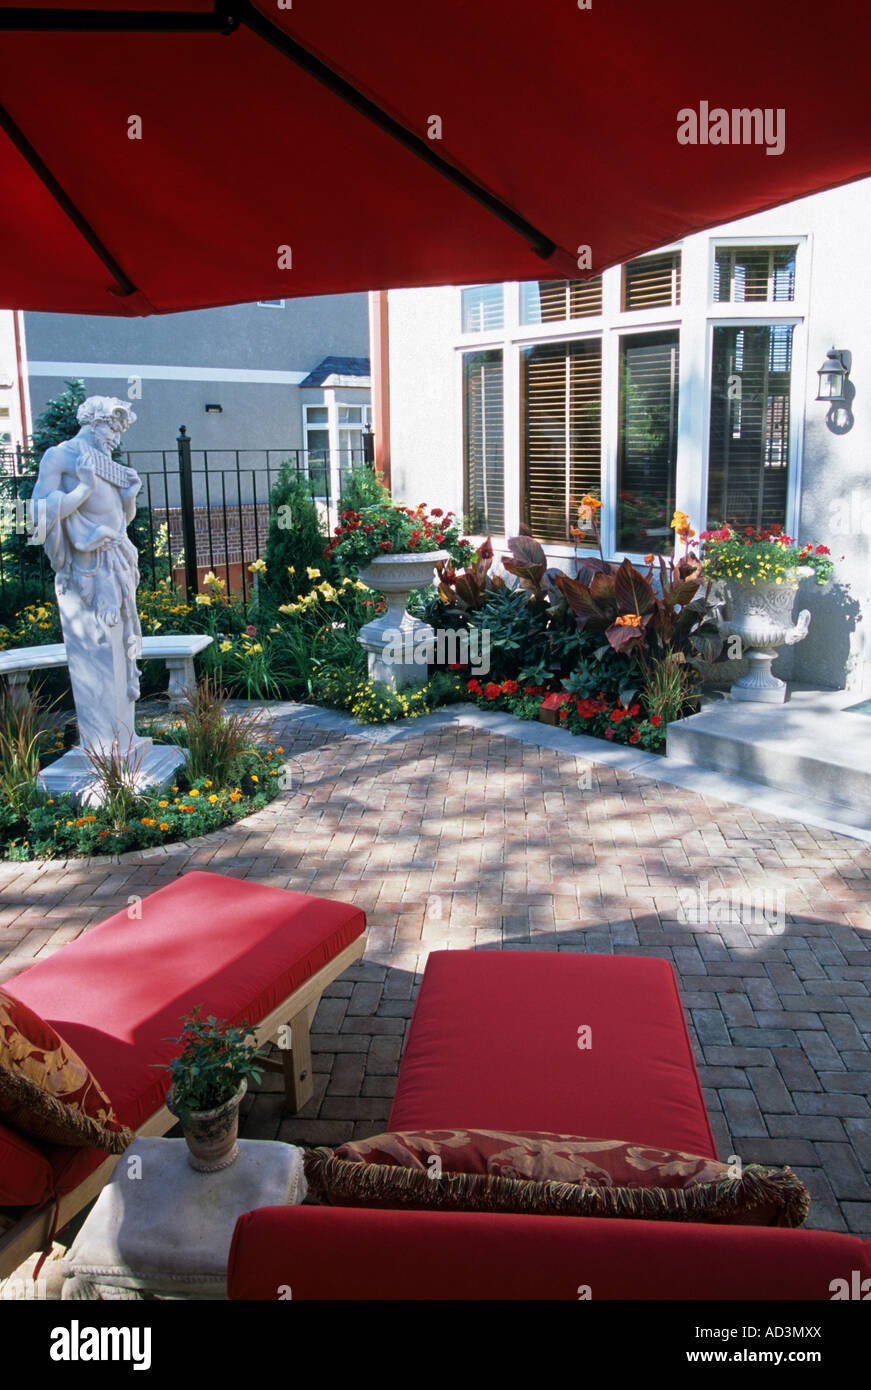 MINNEAPOLIS, MINNESOTA TOWNHOME patio giardino con la statua di PAN TERME, banco HADDENSTONE, canna gigli e erbe giapponese. Foto Stock